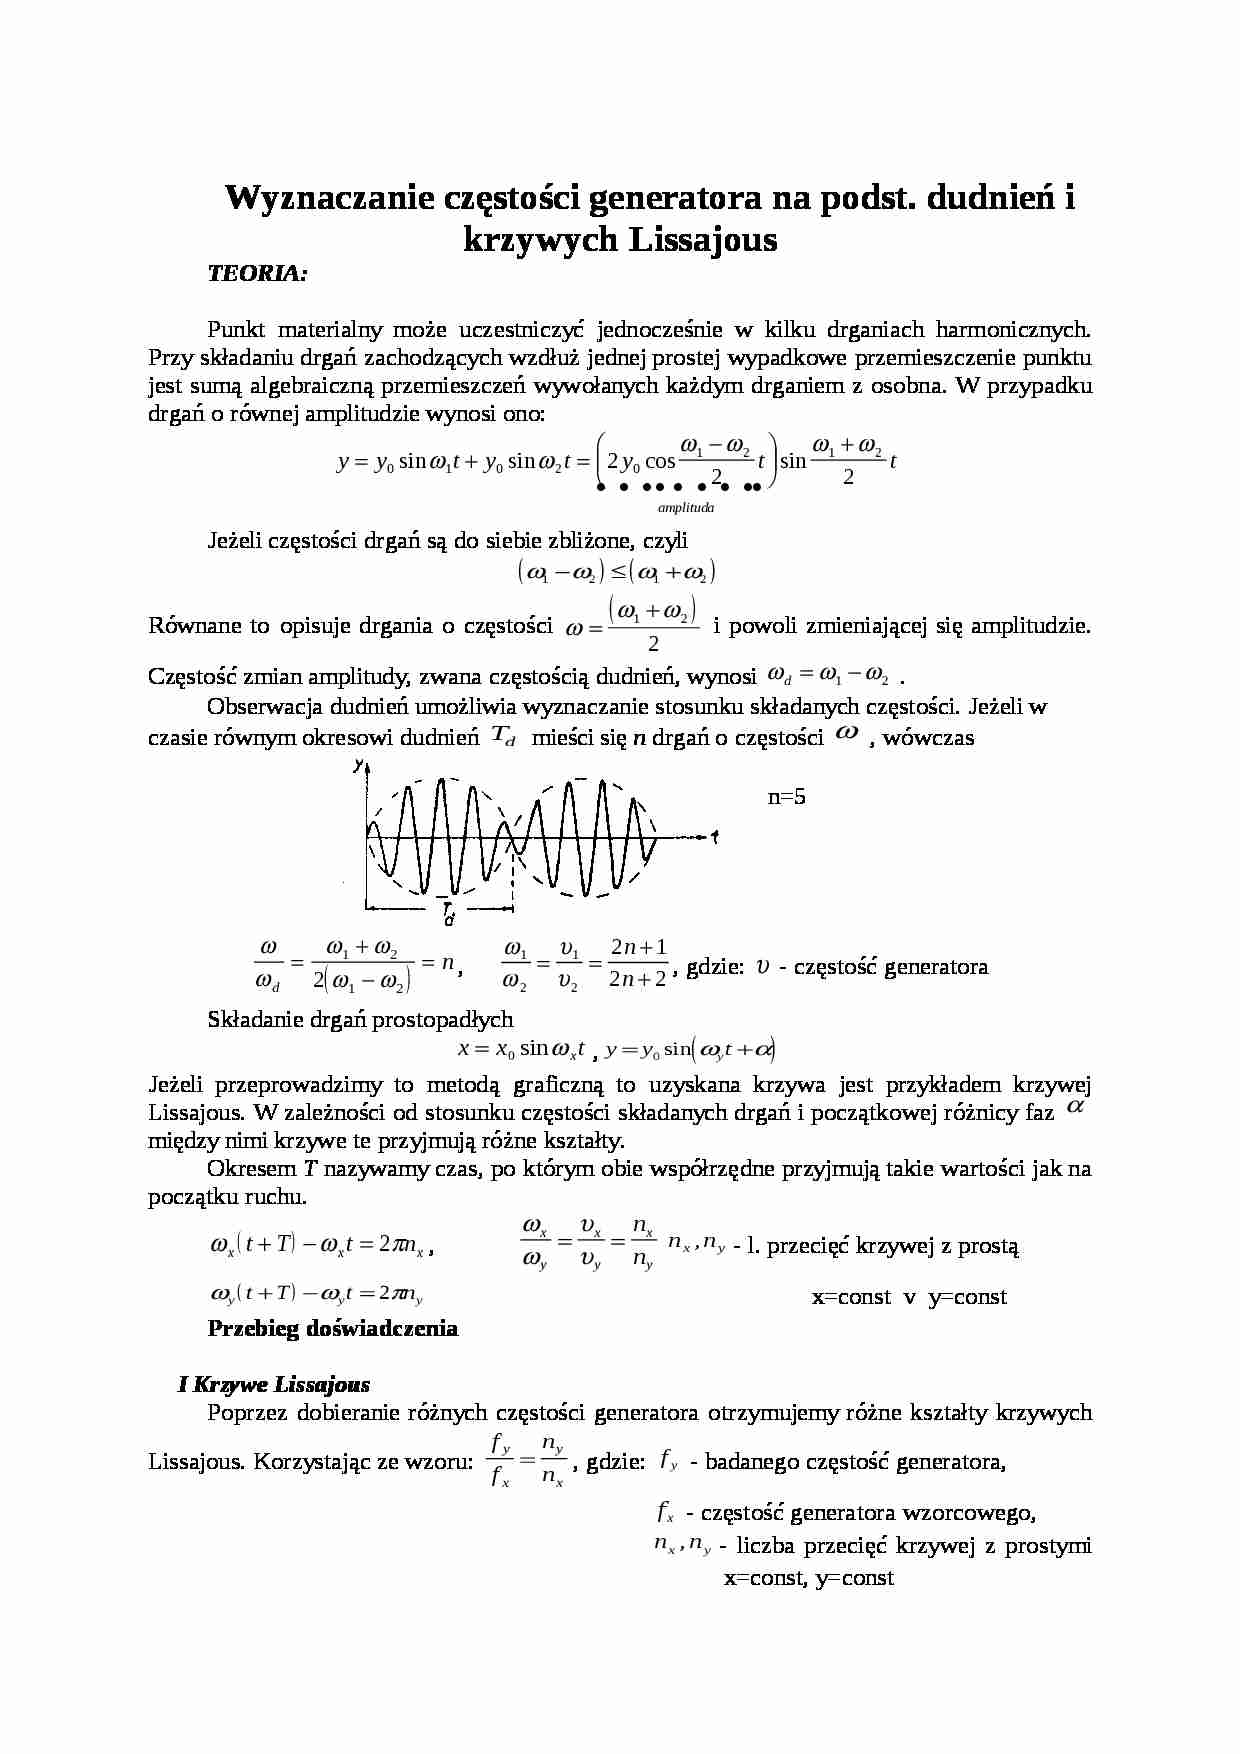 Wyznaczanie częstości generatora na podstawie dudnień i krzywych Lissajous - strona 1